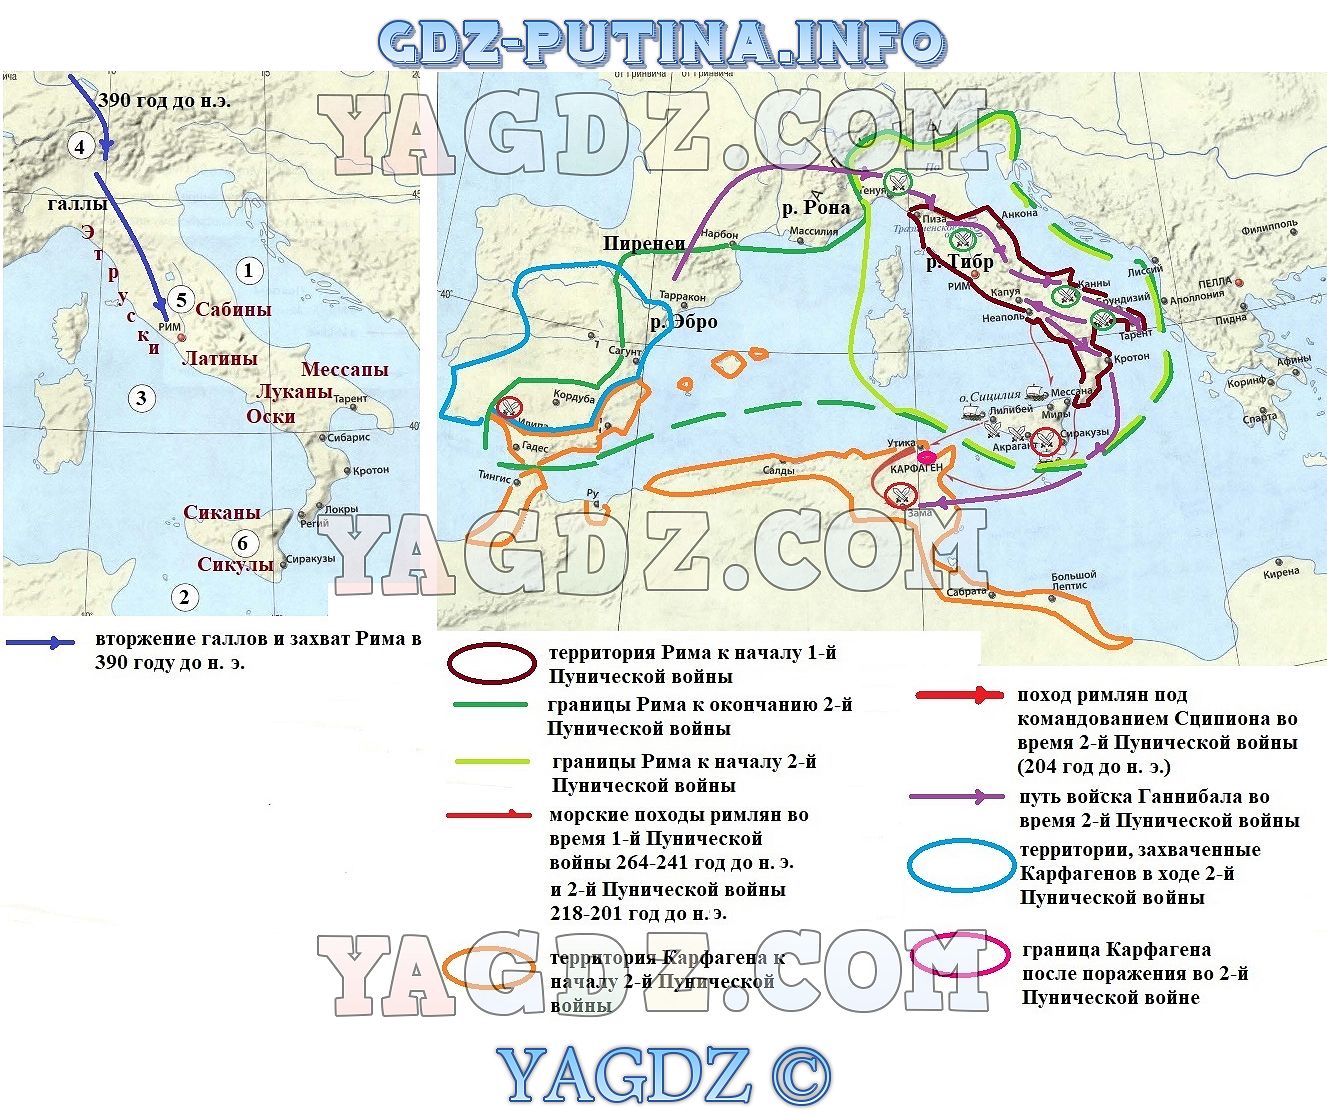 древняя греция и греческие колонии контурная карта 5 класс